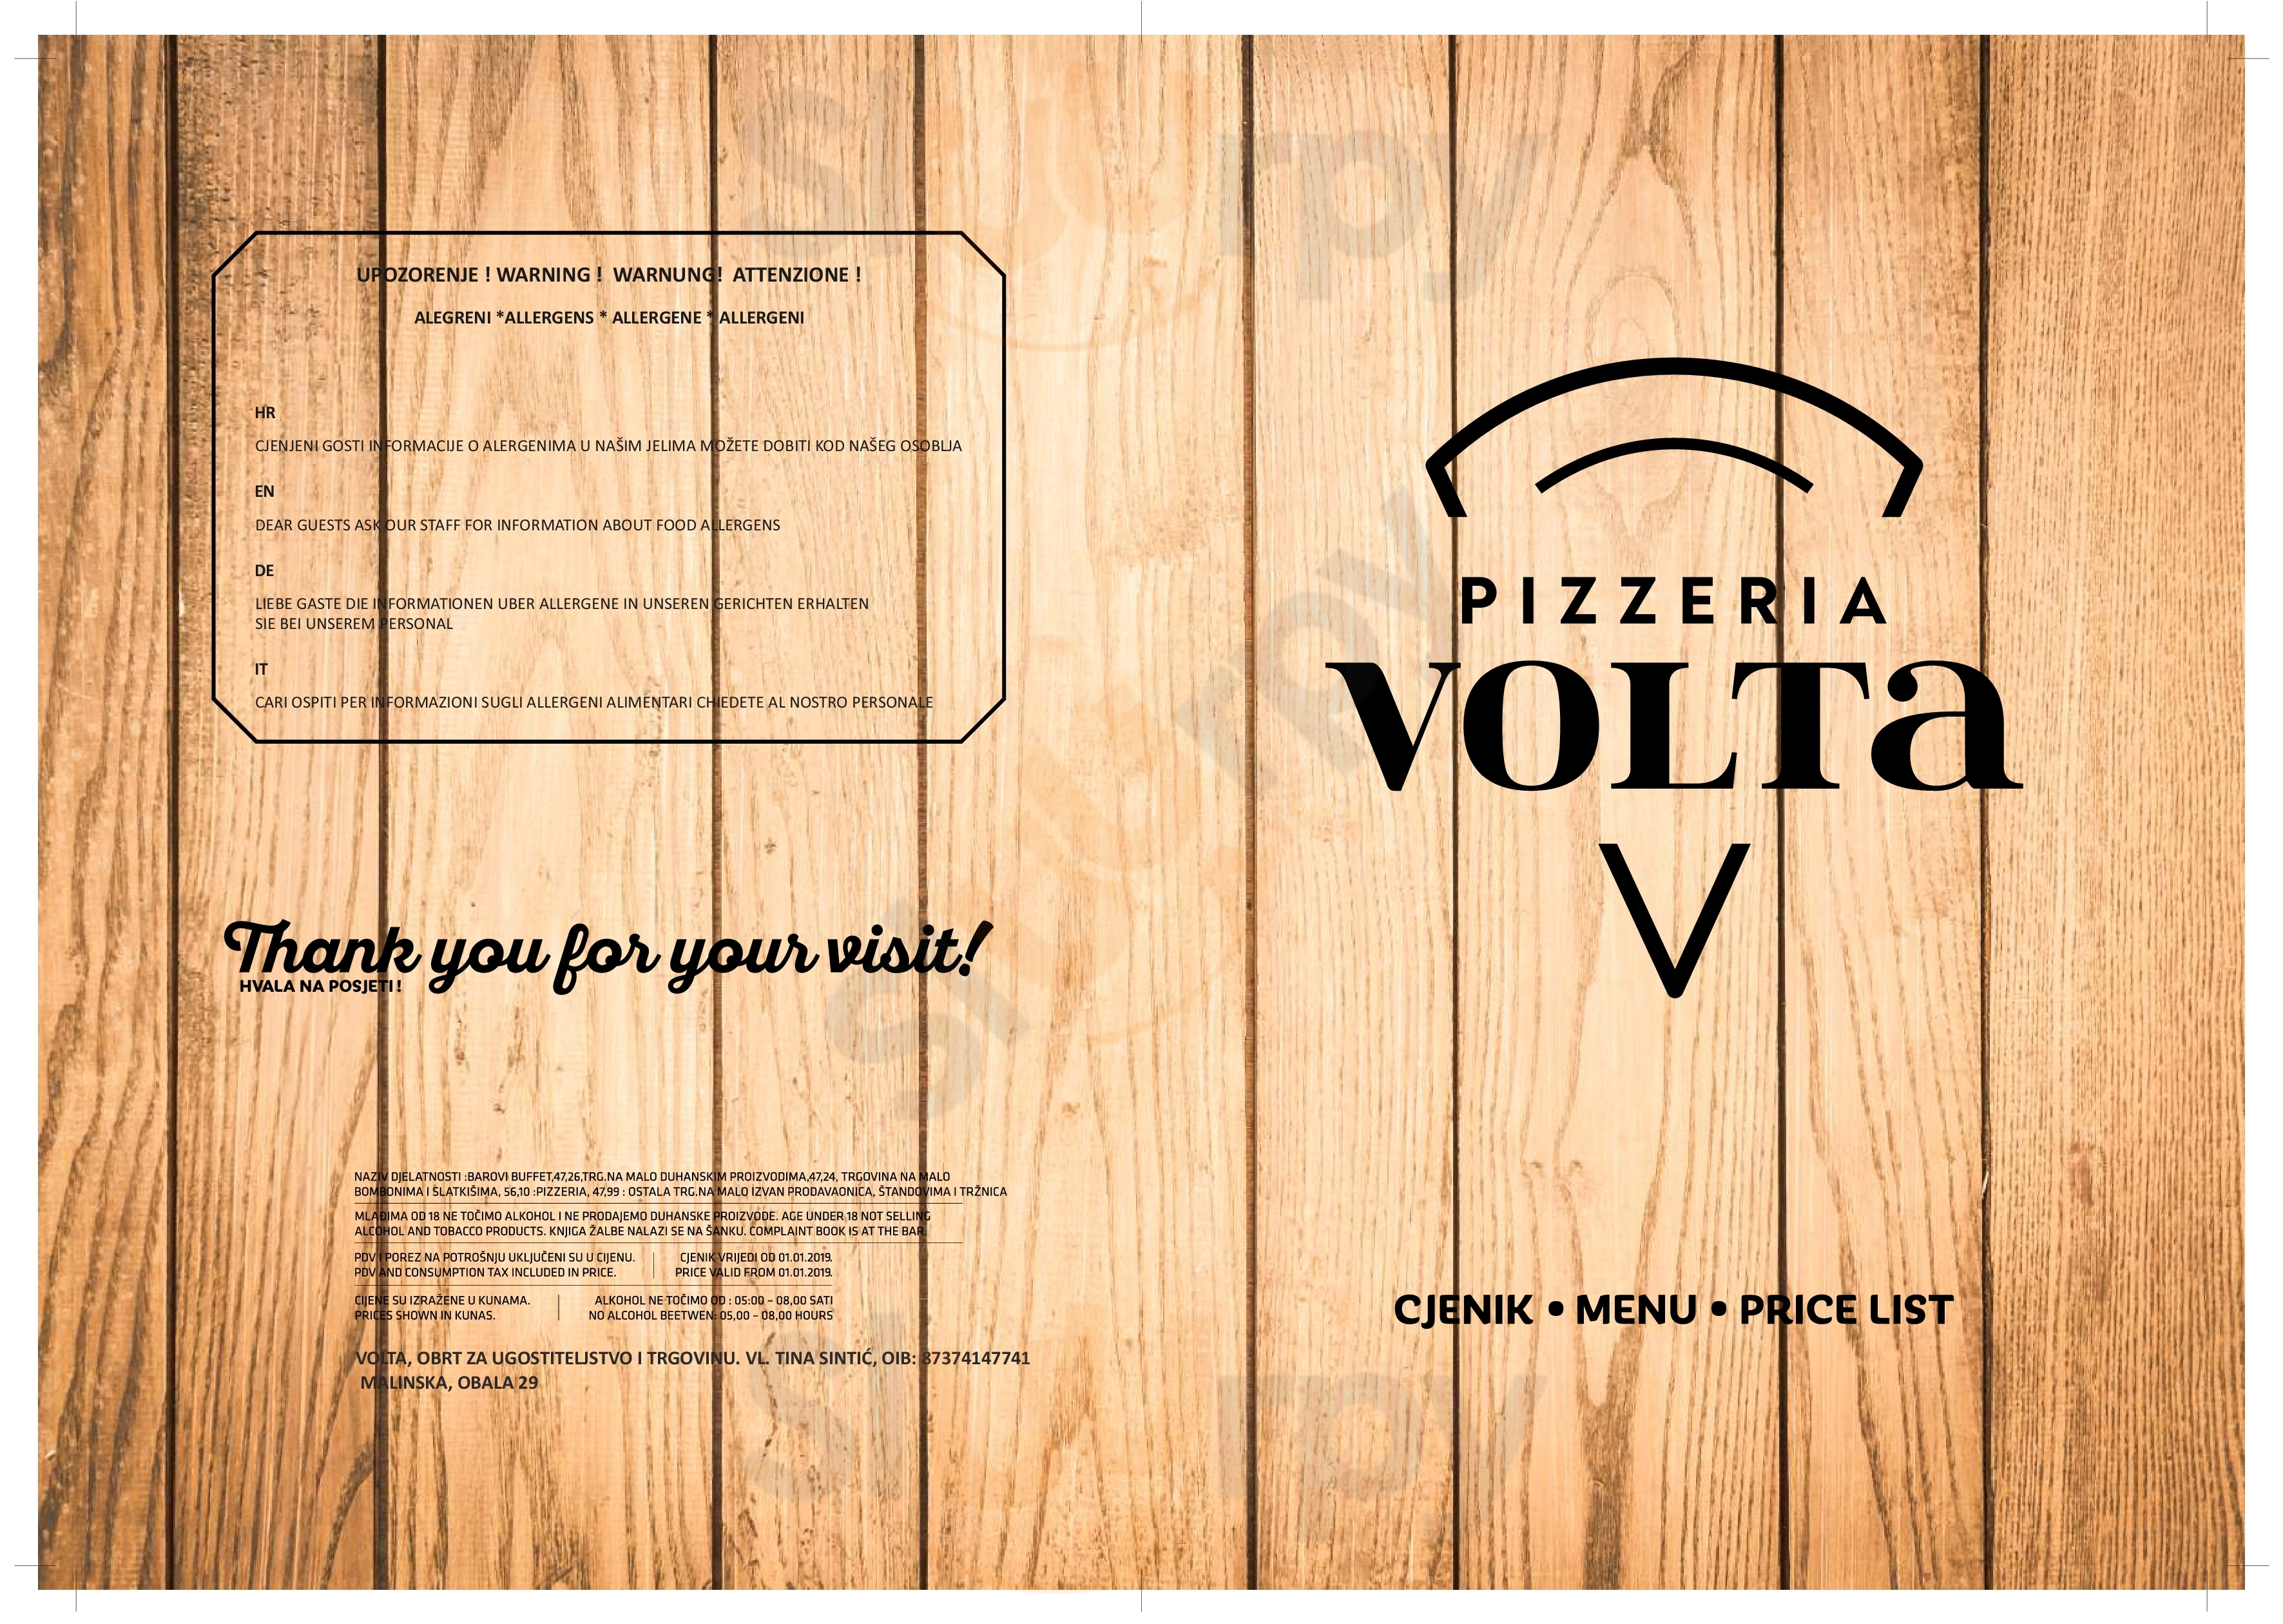 Bife Pizzeria Volta Malinska Menu - 1